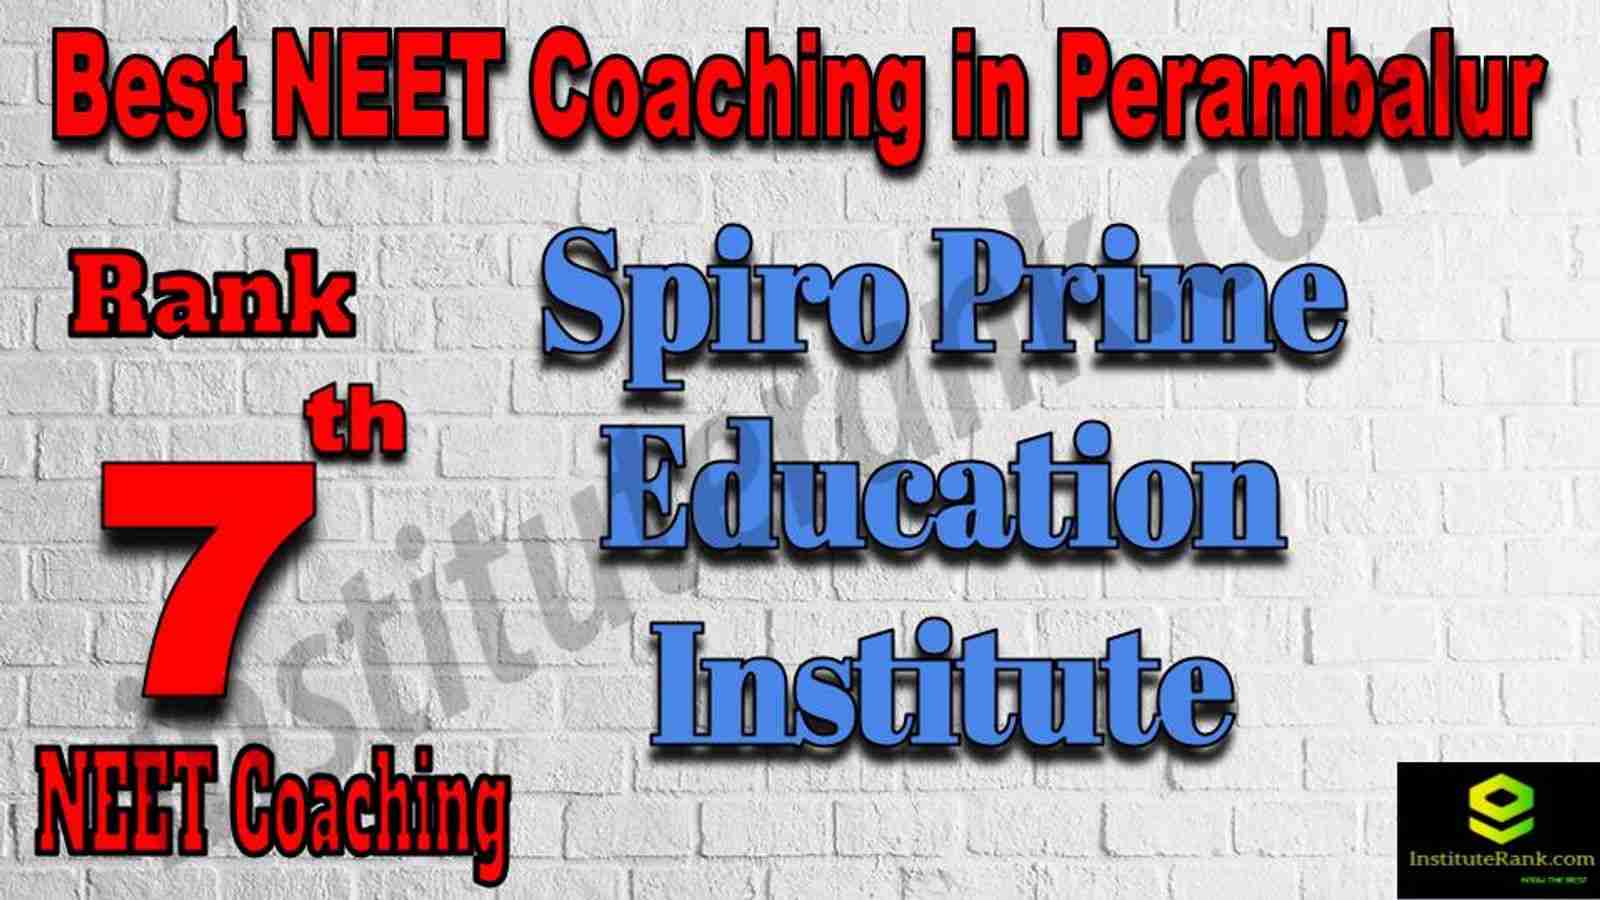 7th Best NEET Coaching in Perambalur